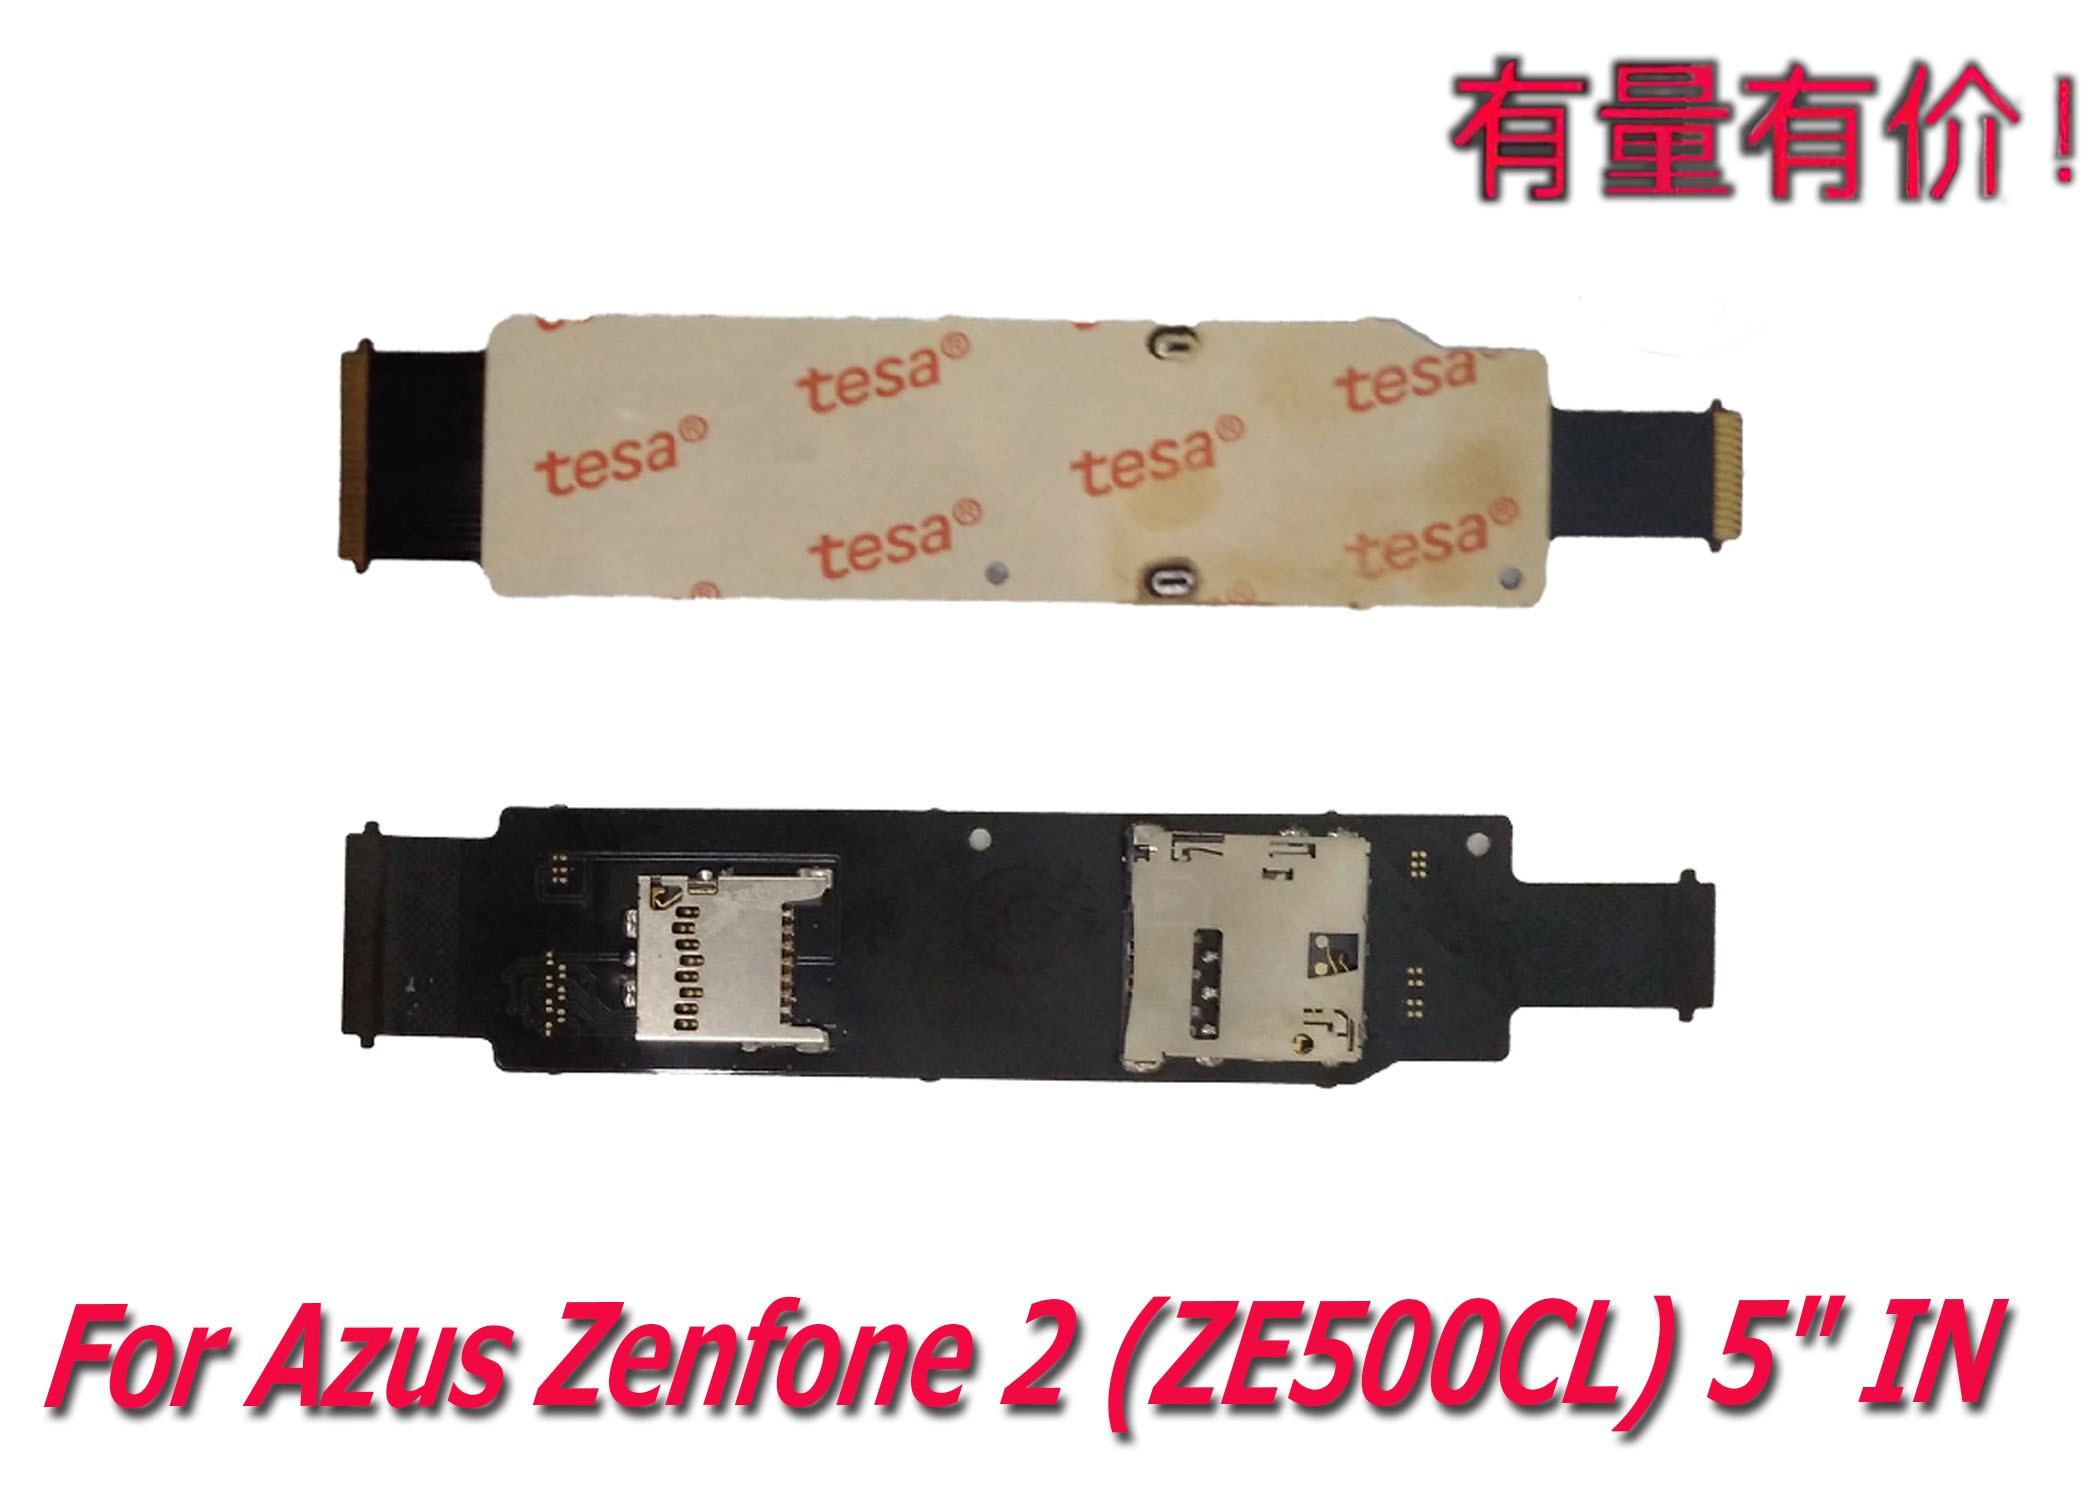 Simcard Azus Zenfone 2 - Ze500Cl 5inch Linh Hoạt